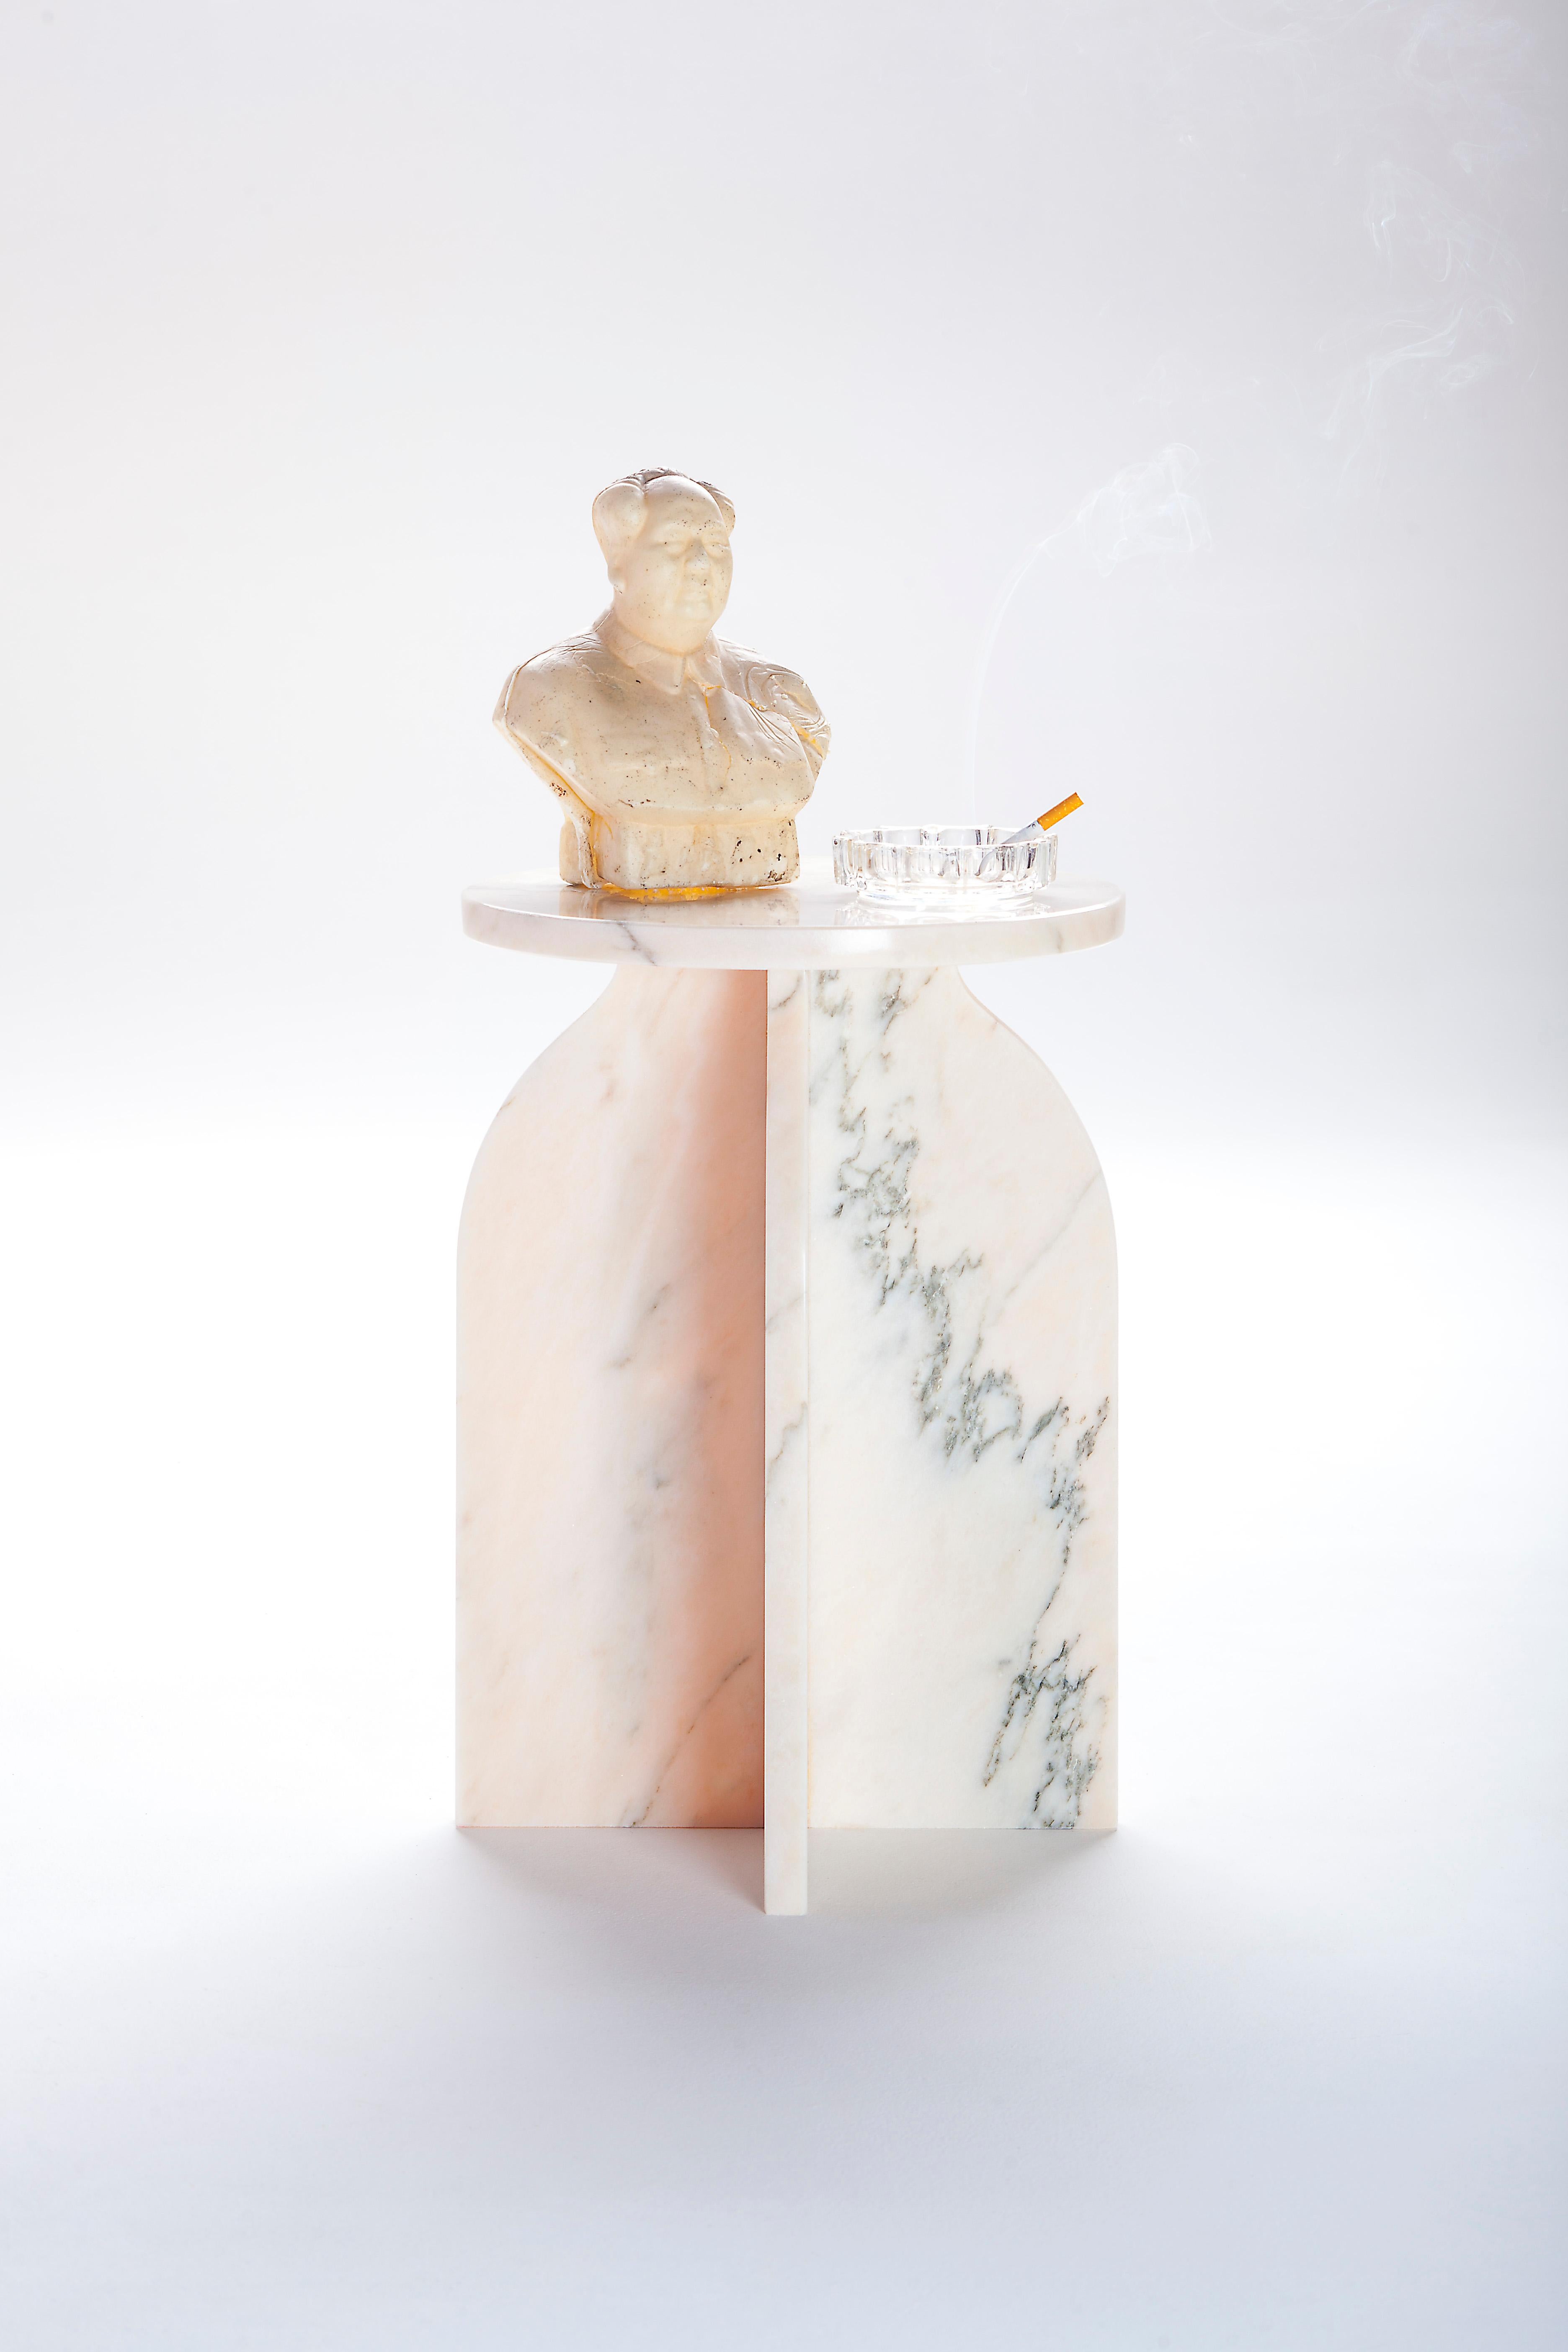 Marmorbeistelltisch von Joseph Vila Capdevila
MATERIAL: Marmor
Abmessungen: 33 x 47 cm
Gewicht: 19,1 kg

Niedriger Tisch, bestehend aus einer kreisförmigen Hülle aus behandeltem Marmor, die auf vier Beinen aus demselben Material ruht und zwei